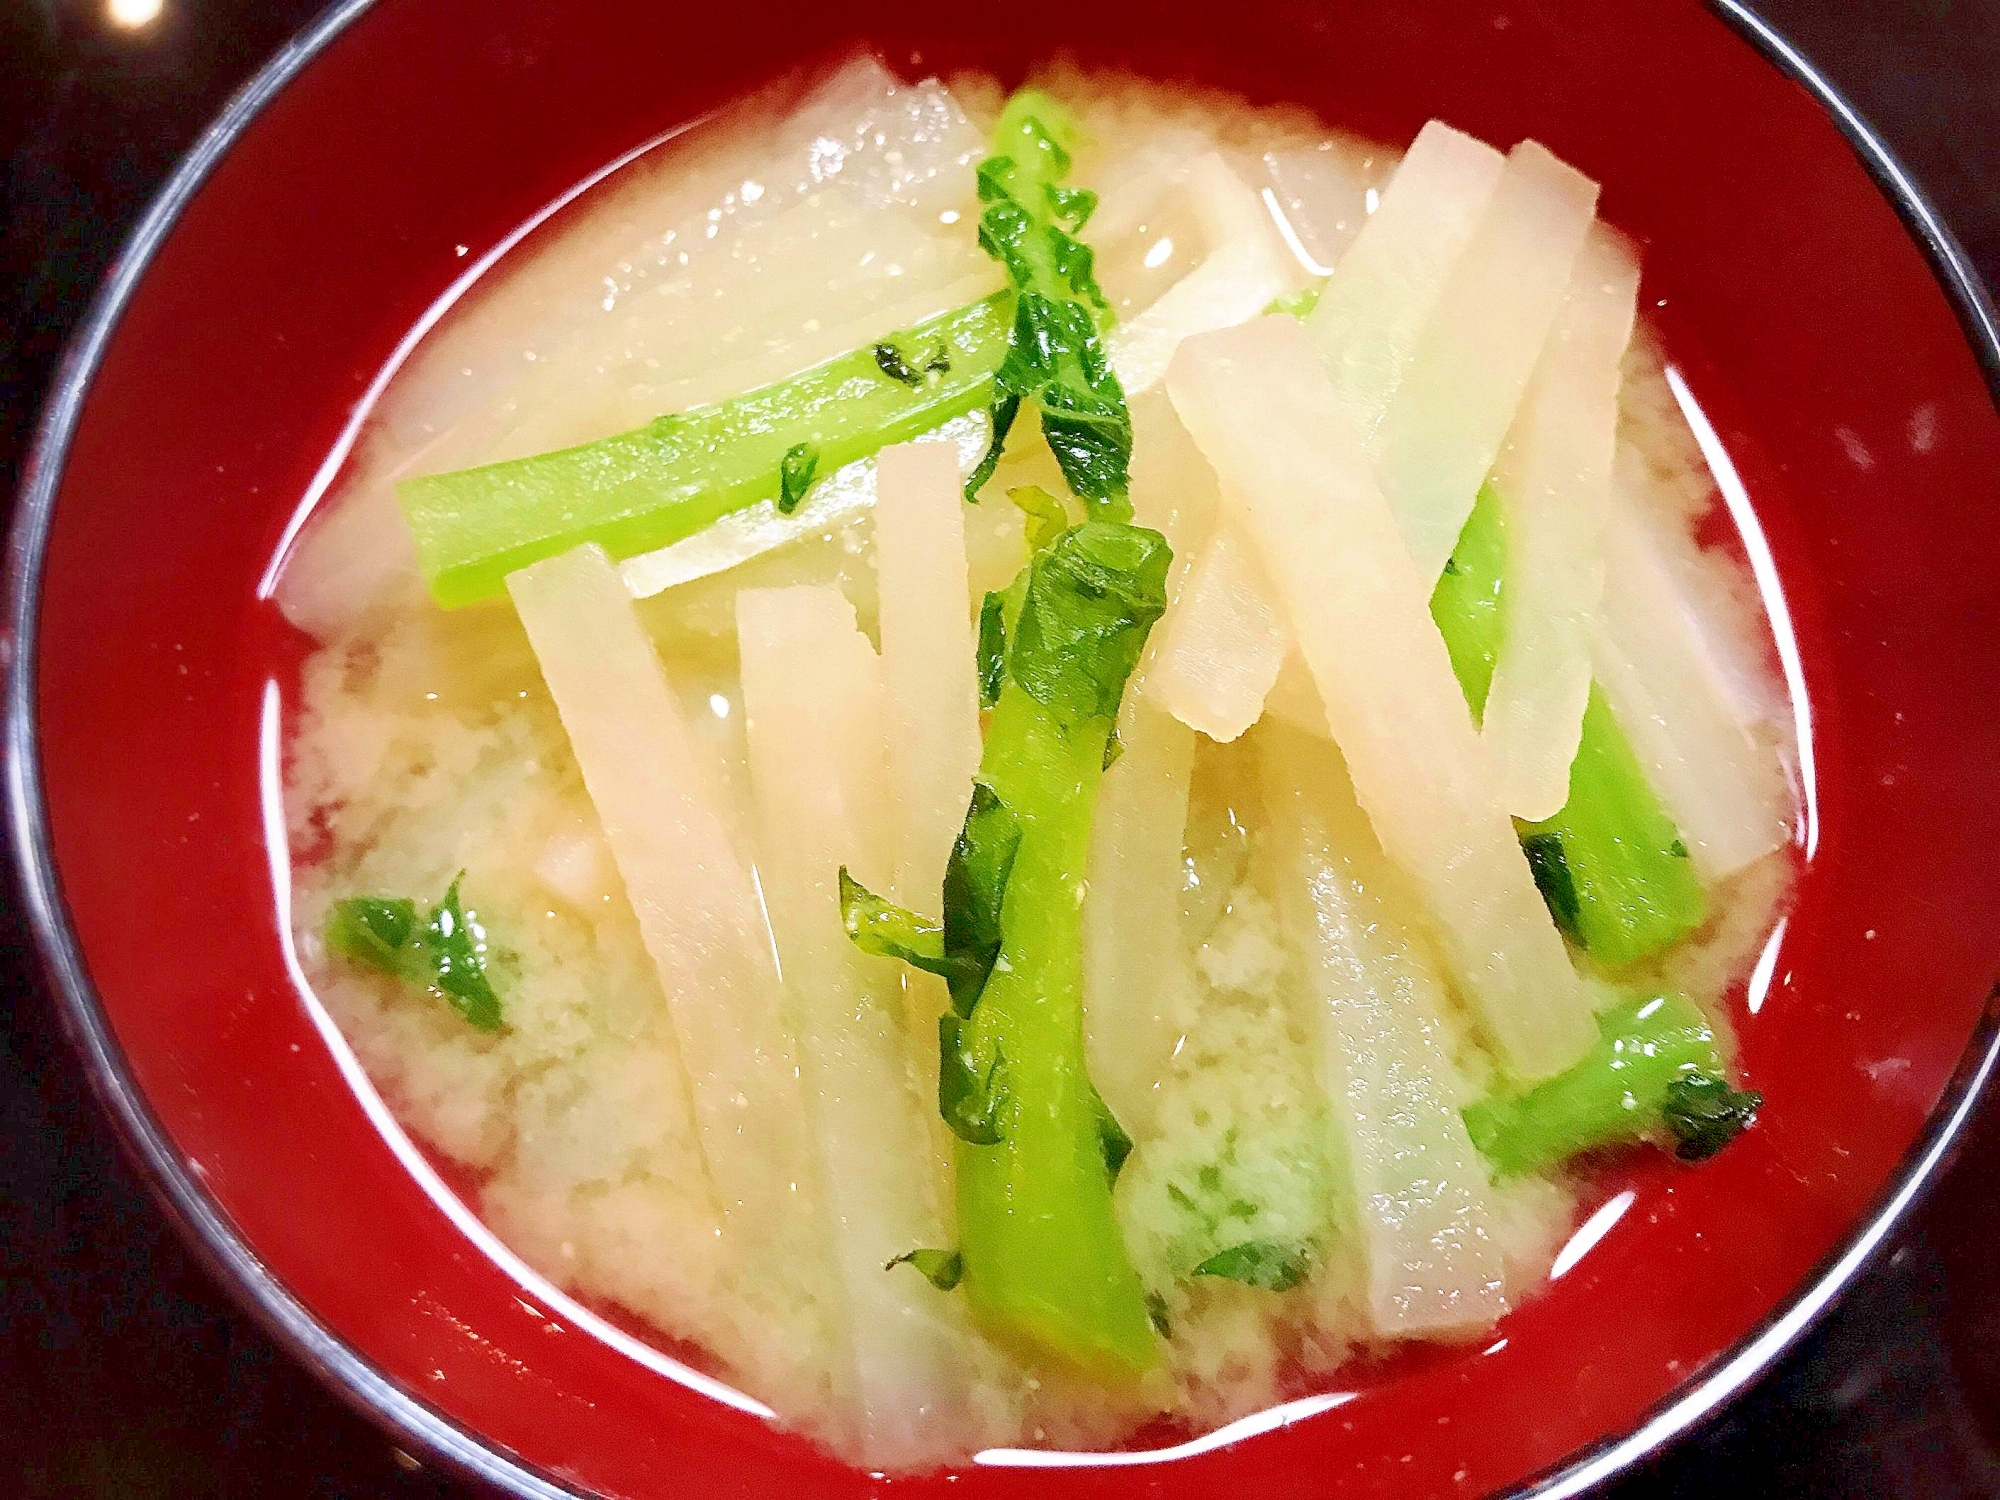 驚きの大根パワー 具沢山の大根のお味噌汁 レシピ 作り方 By Hiro323jp 楽天レシピ